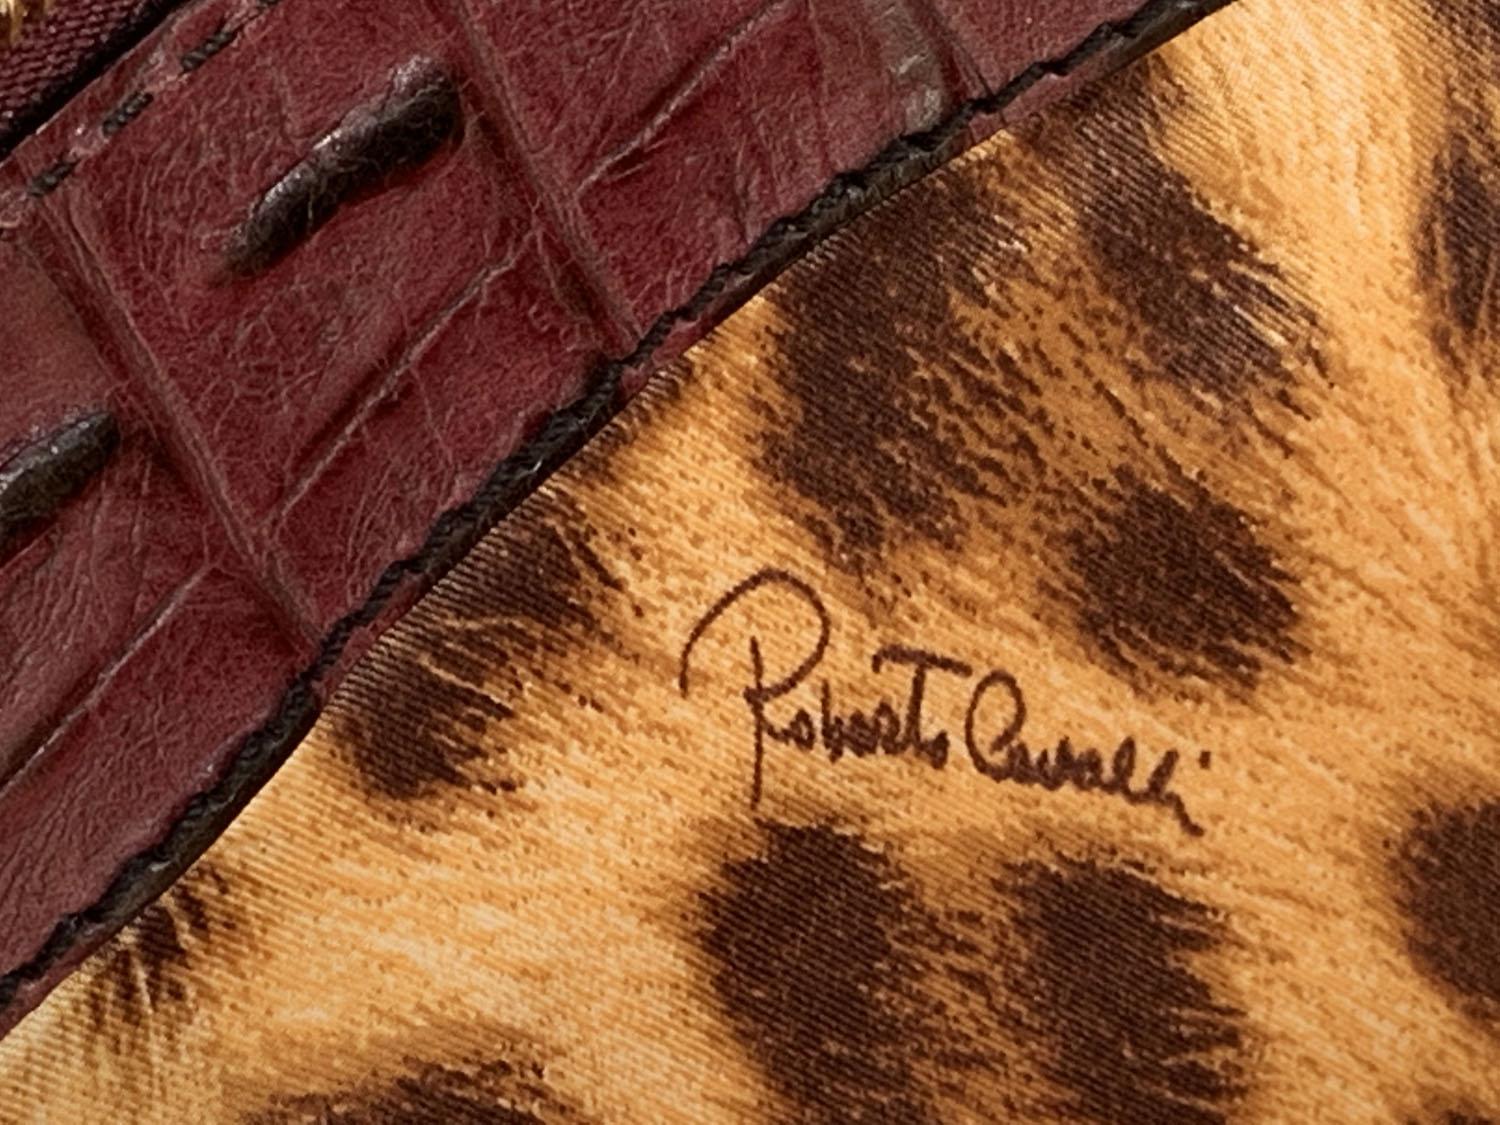 Grand sac Roberto Cavalli F 2006 bordeaux velours avec bordure en crocodile peint en or, neuve avec étiquette en vente 7